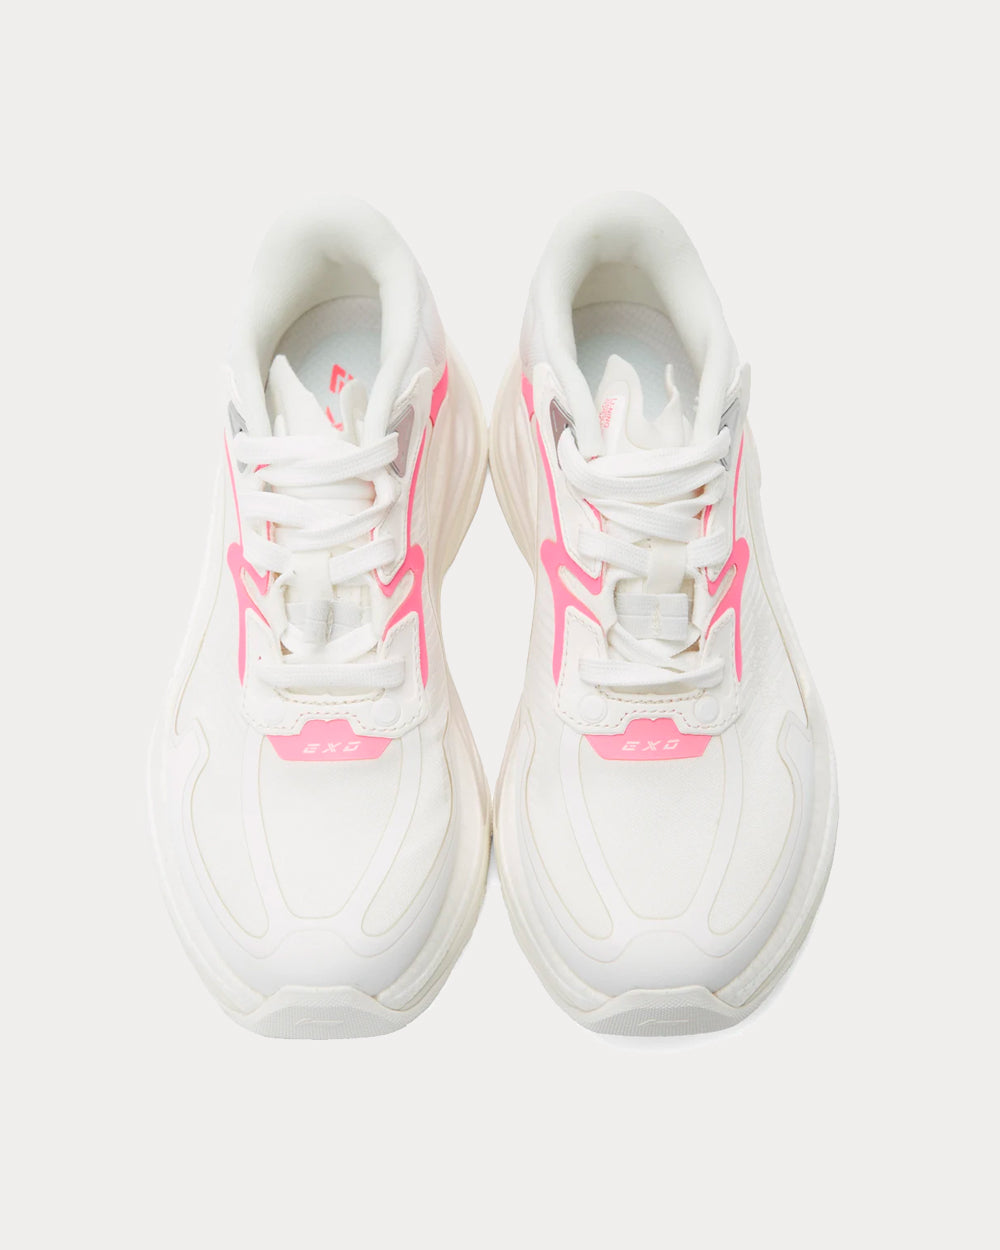 Li-Ning - EXD Infinity White / Pink Low Top Sneakers